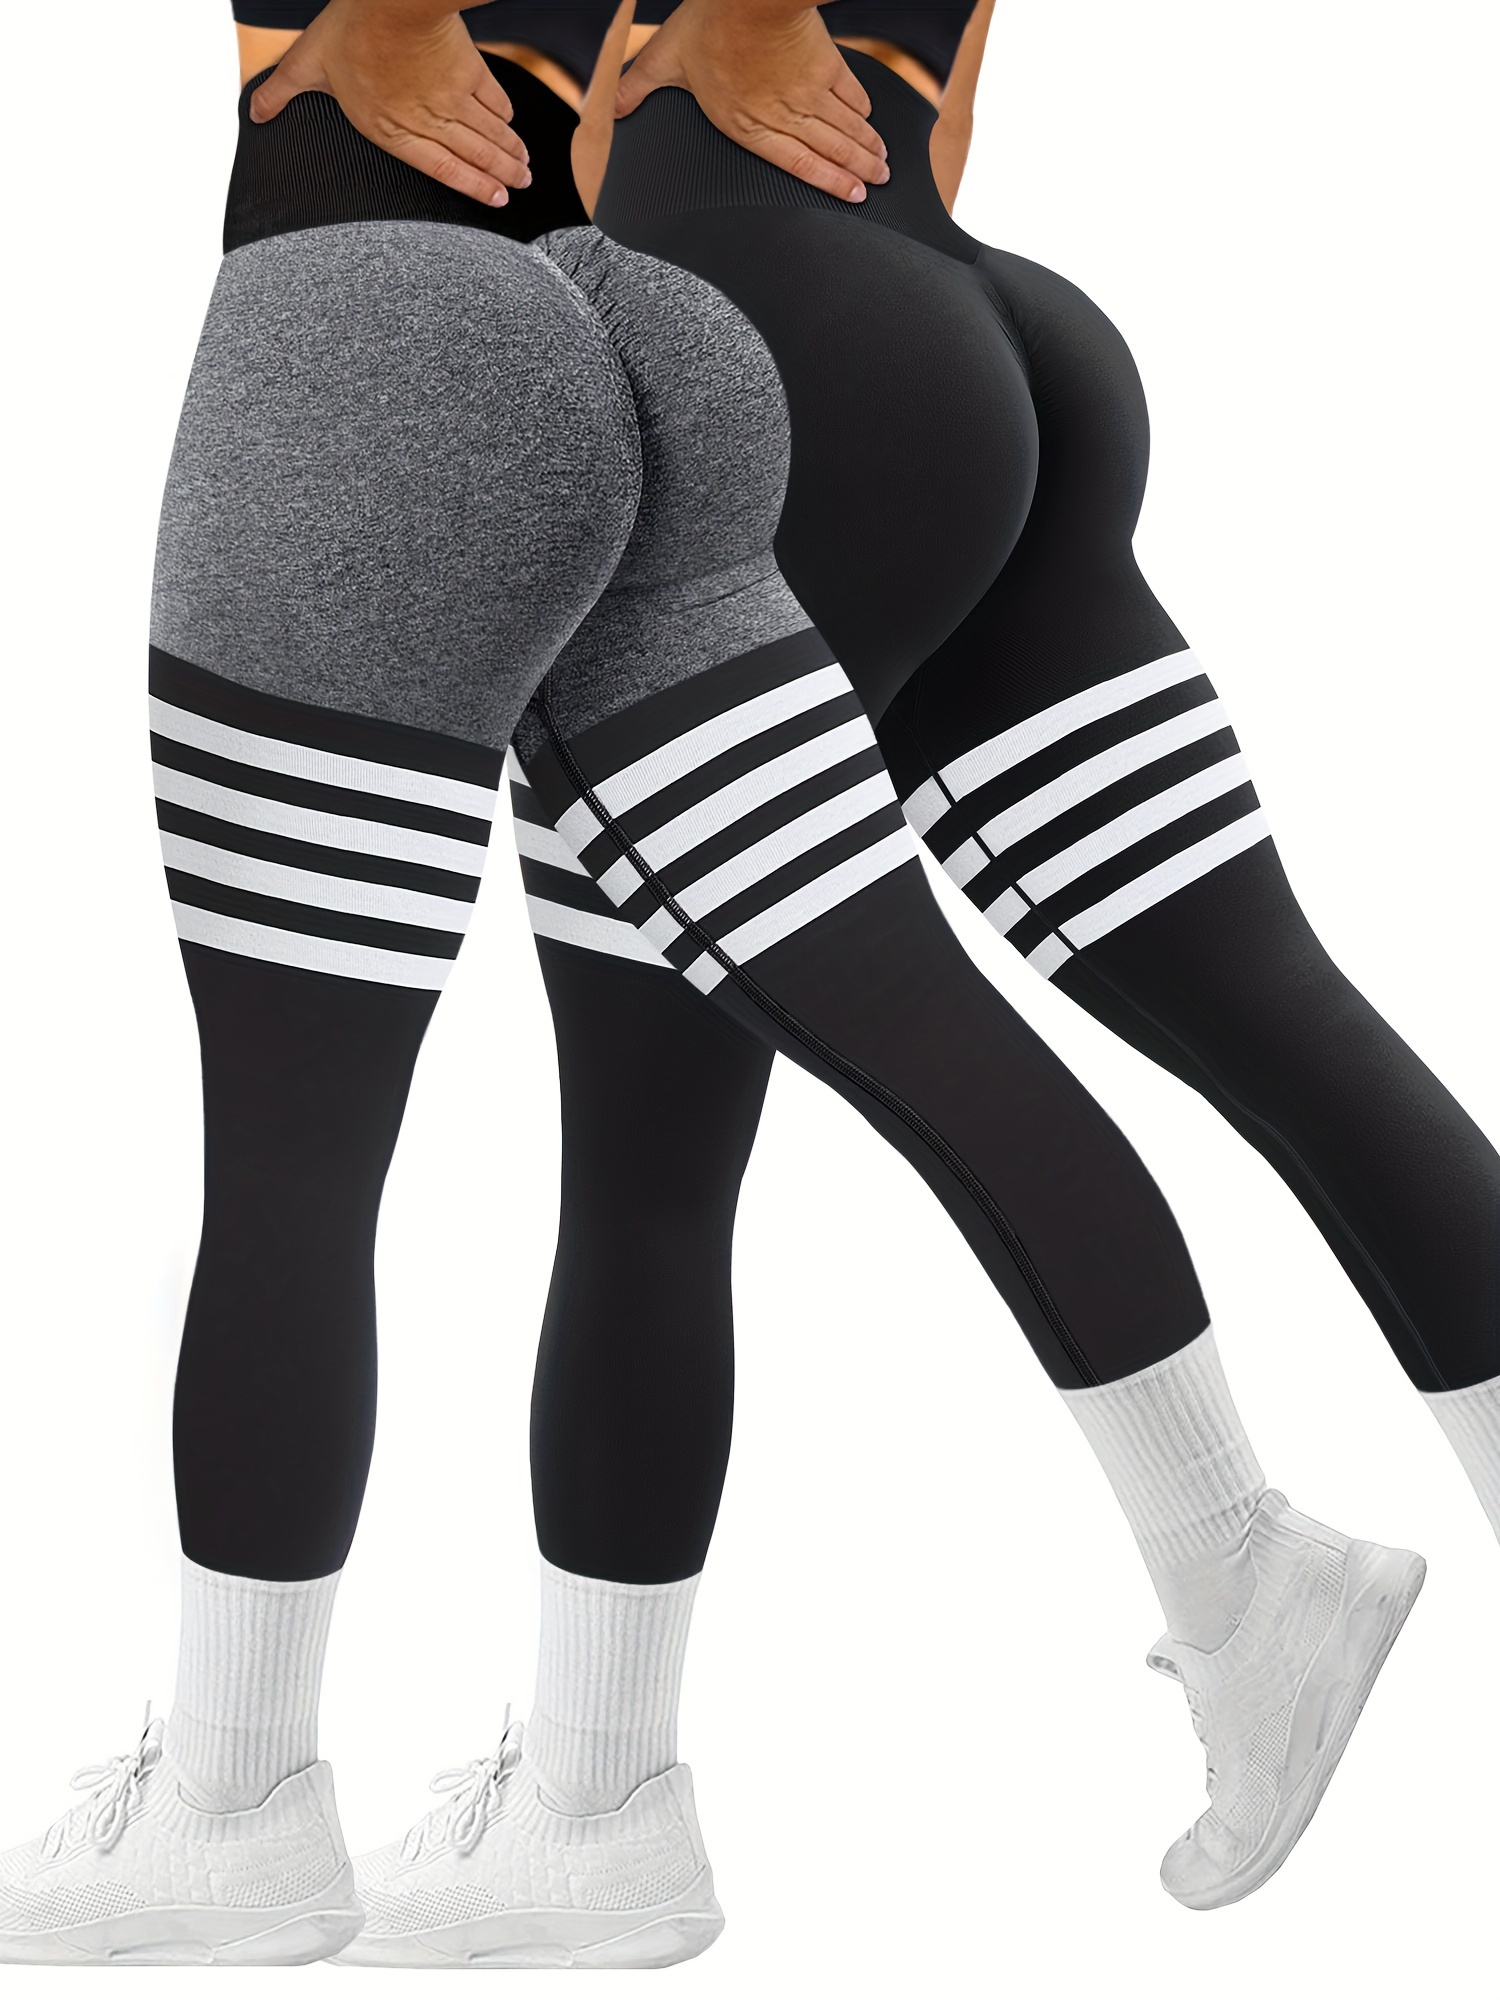 big butt yoga pants